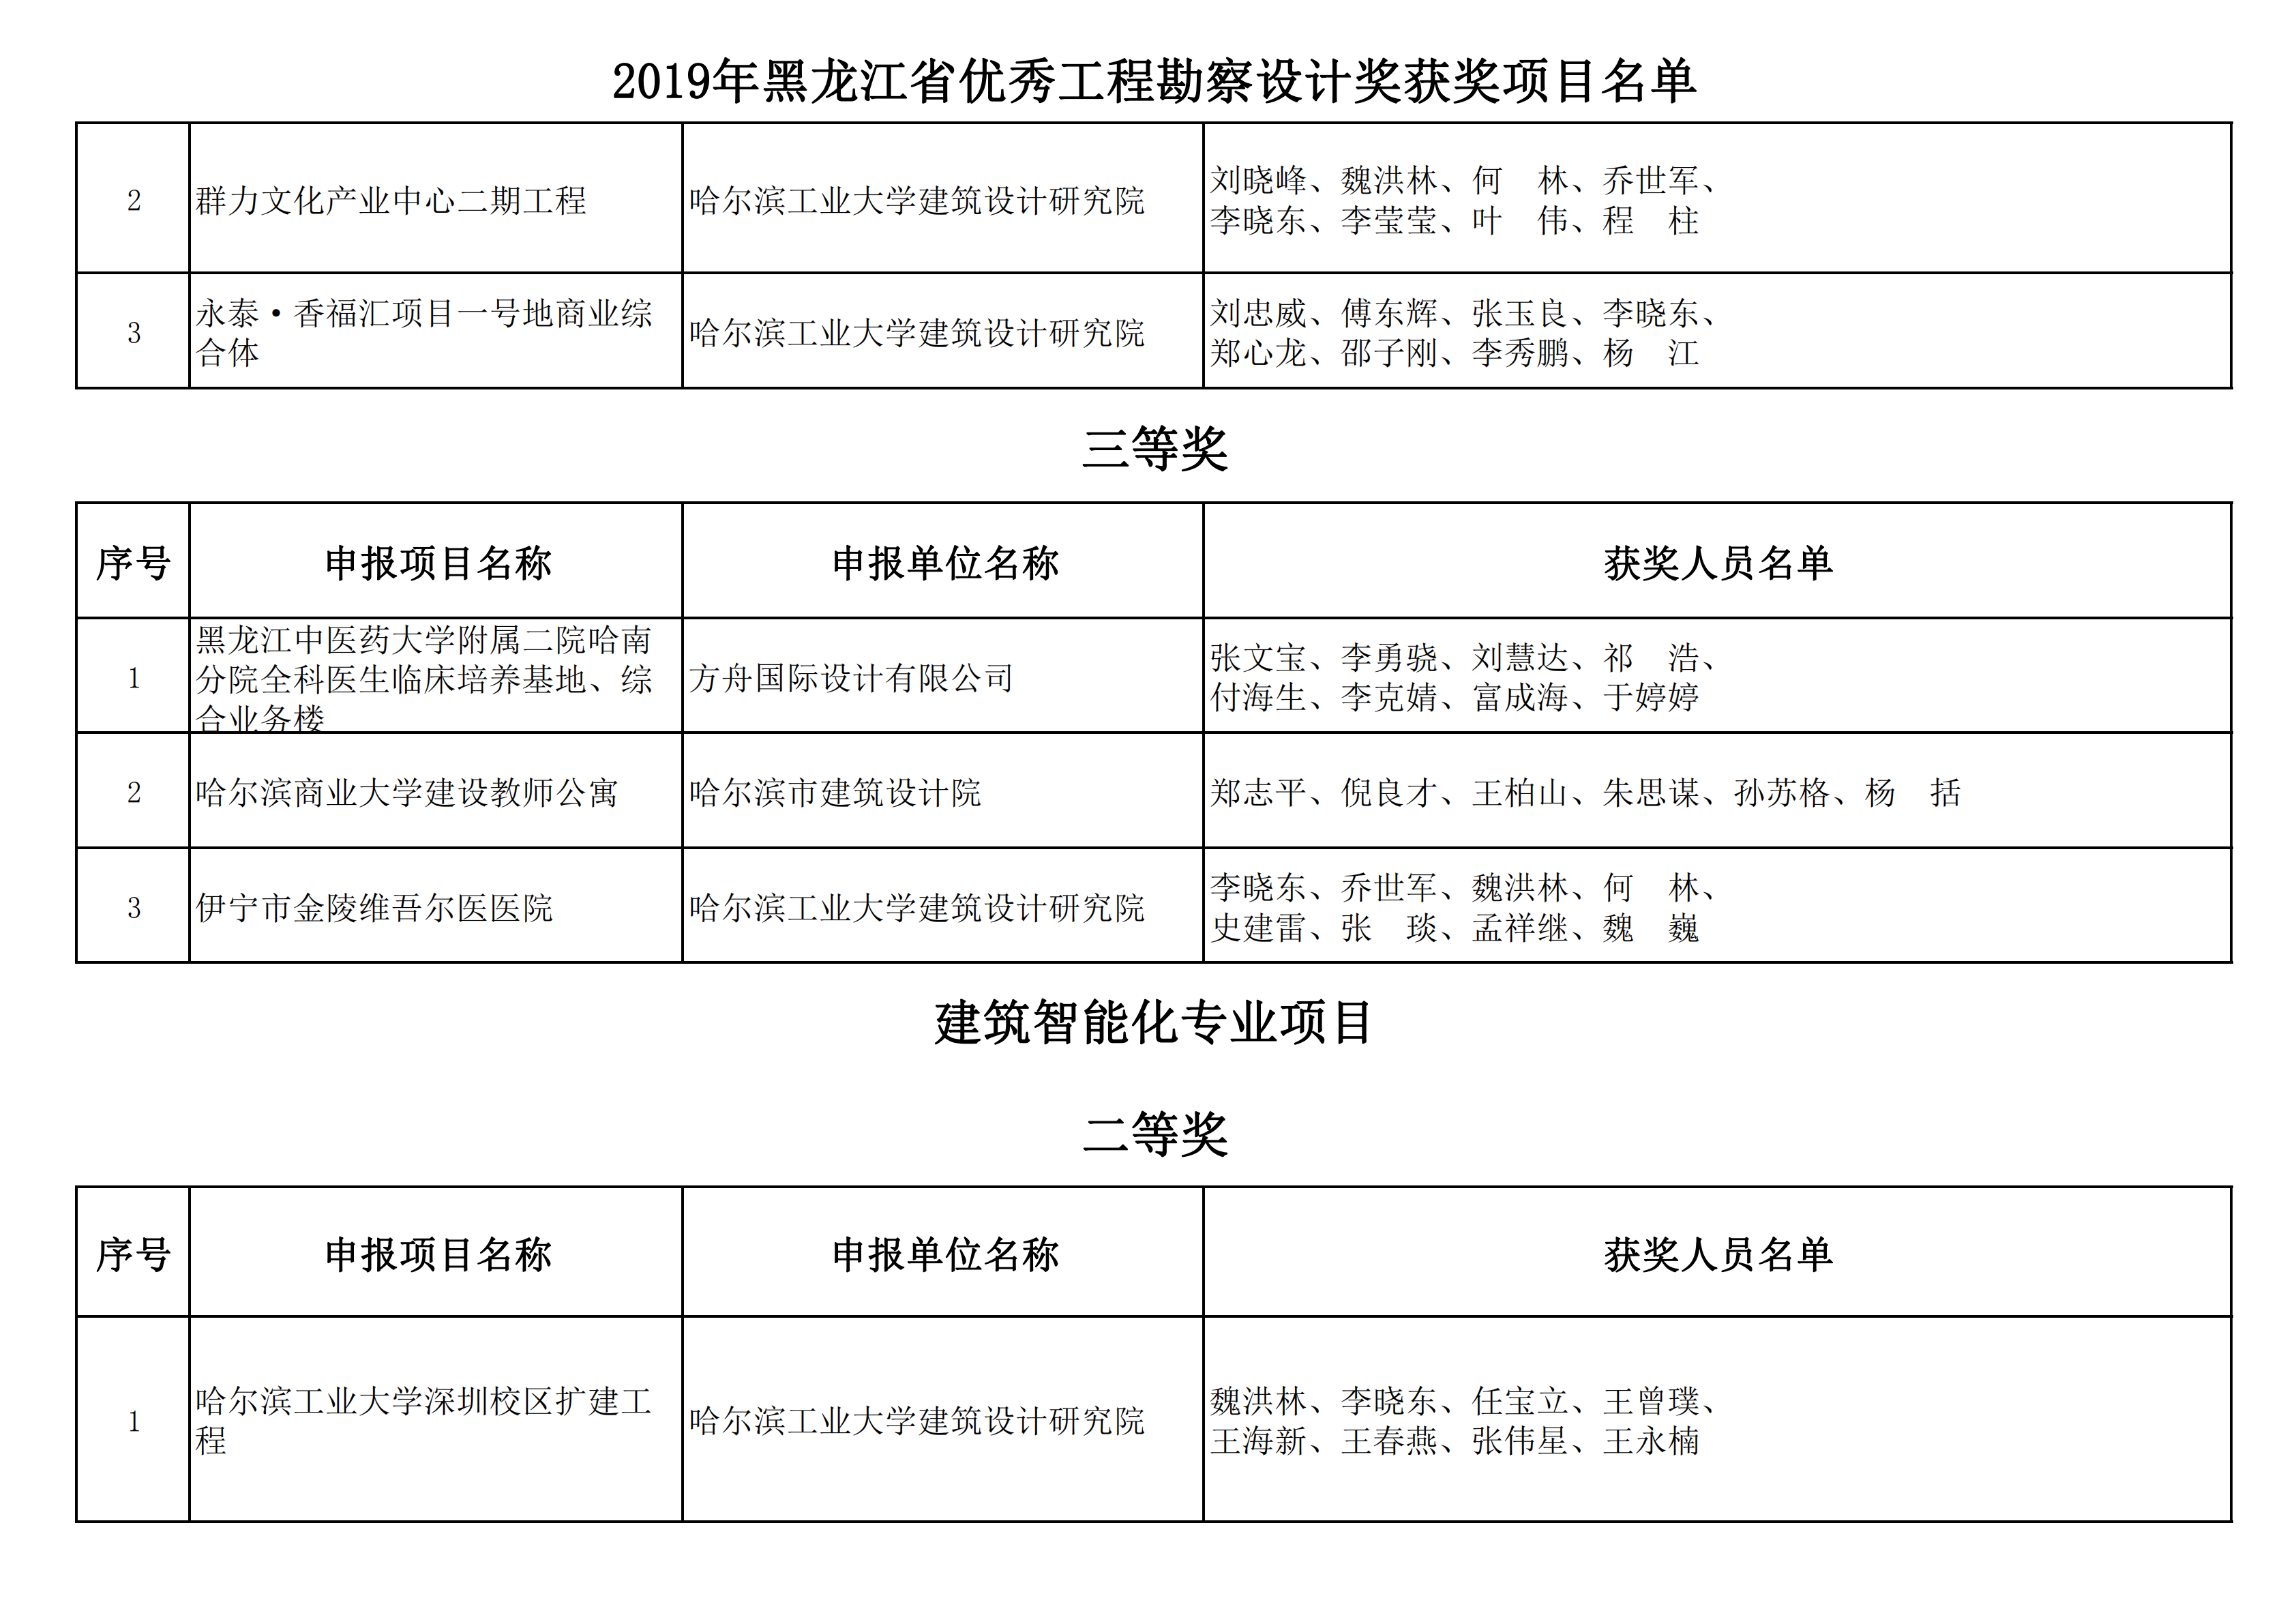 2019年黑龙江省优秀工程勘察设计奖获奖项目名单_08.png